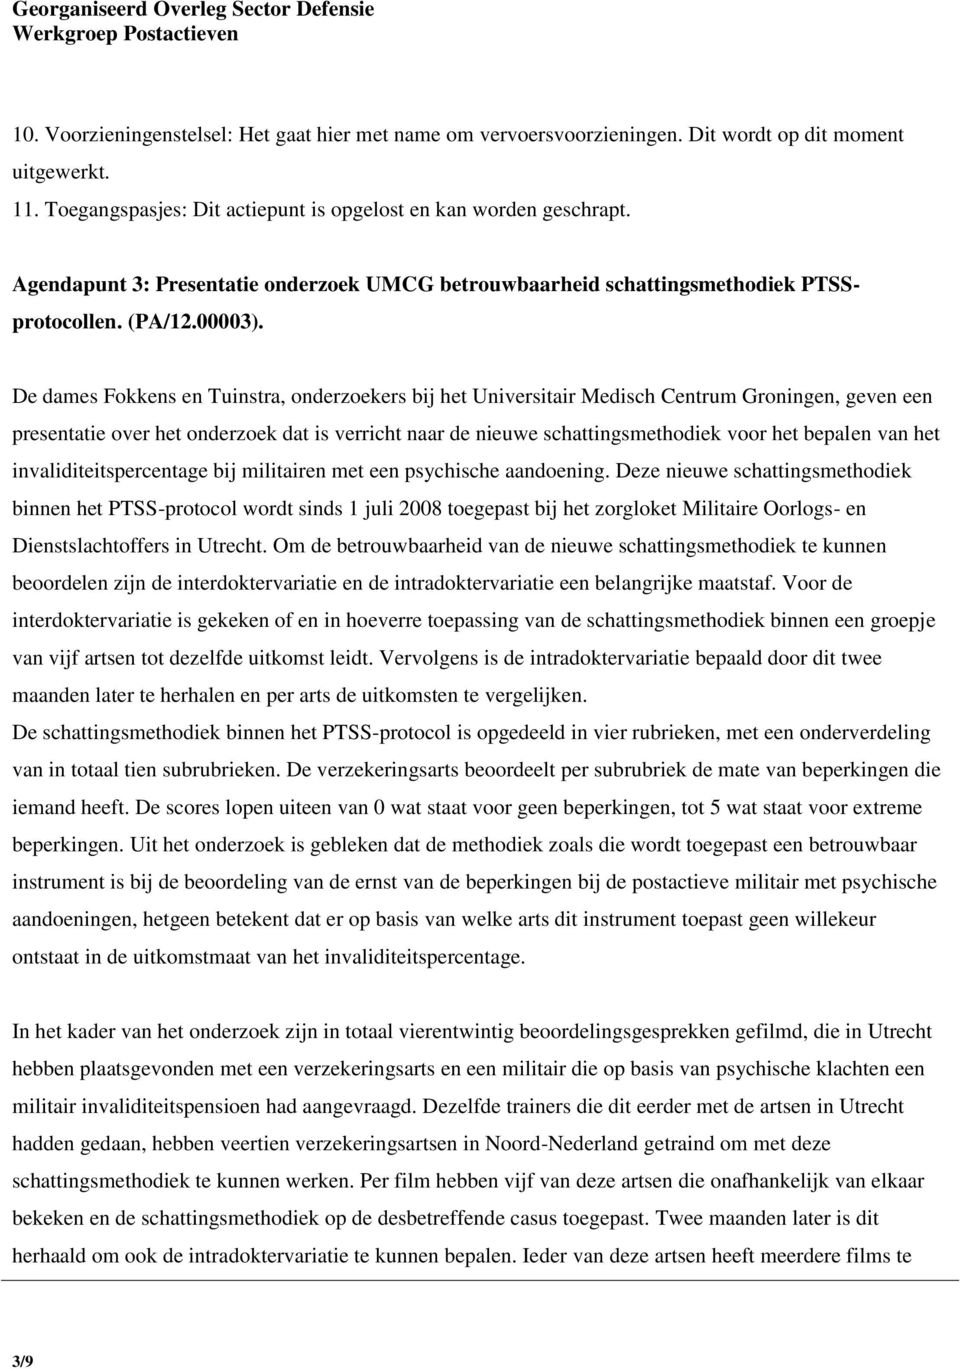 De dames Fokkens en Tuinstra, onderzoekers bij het Universitair Medisch Centrum Groningen, geven een presentatie over het onderzoek dat is verricht naar de nieuwe schattingsmethodiek voor het bepalen